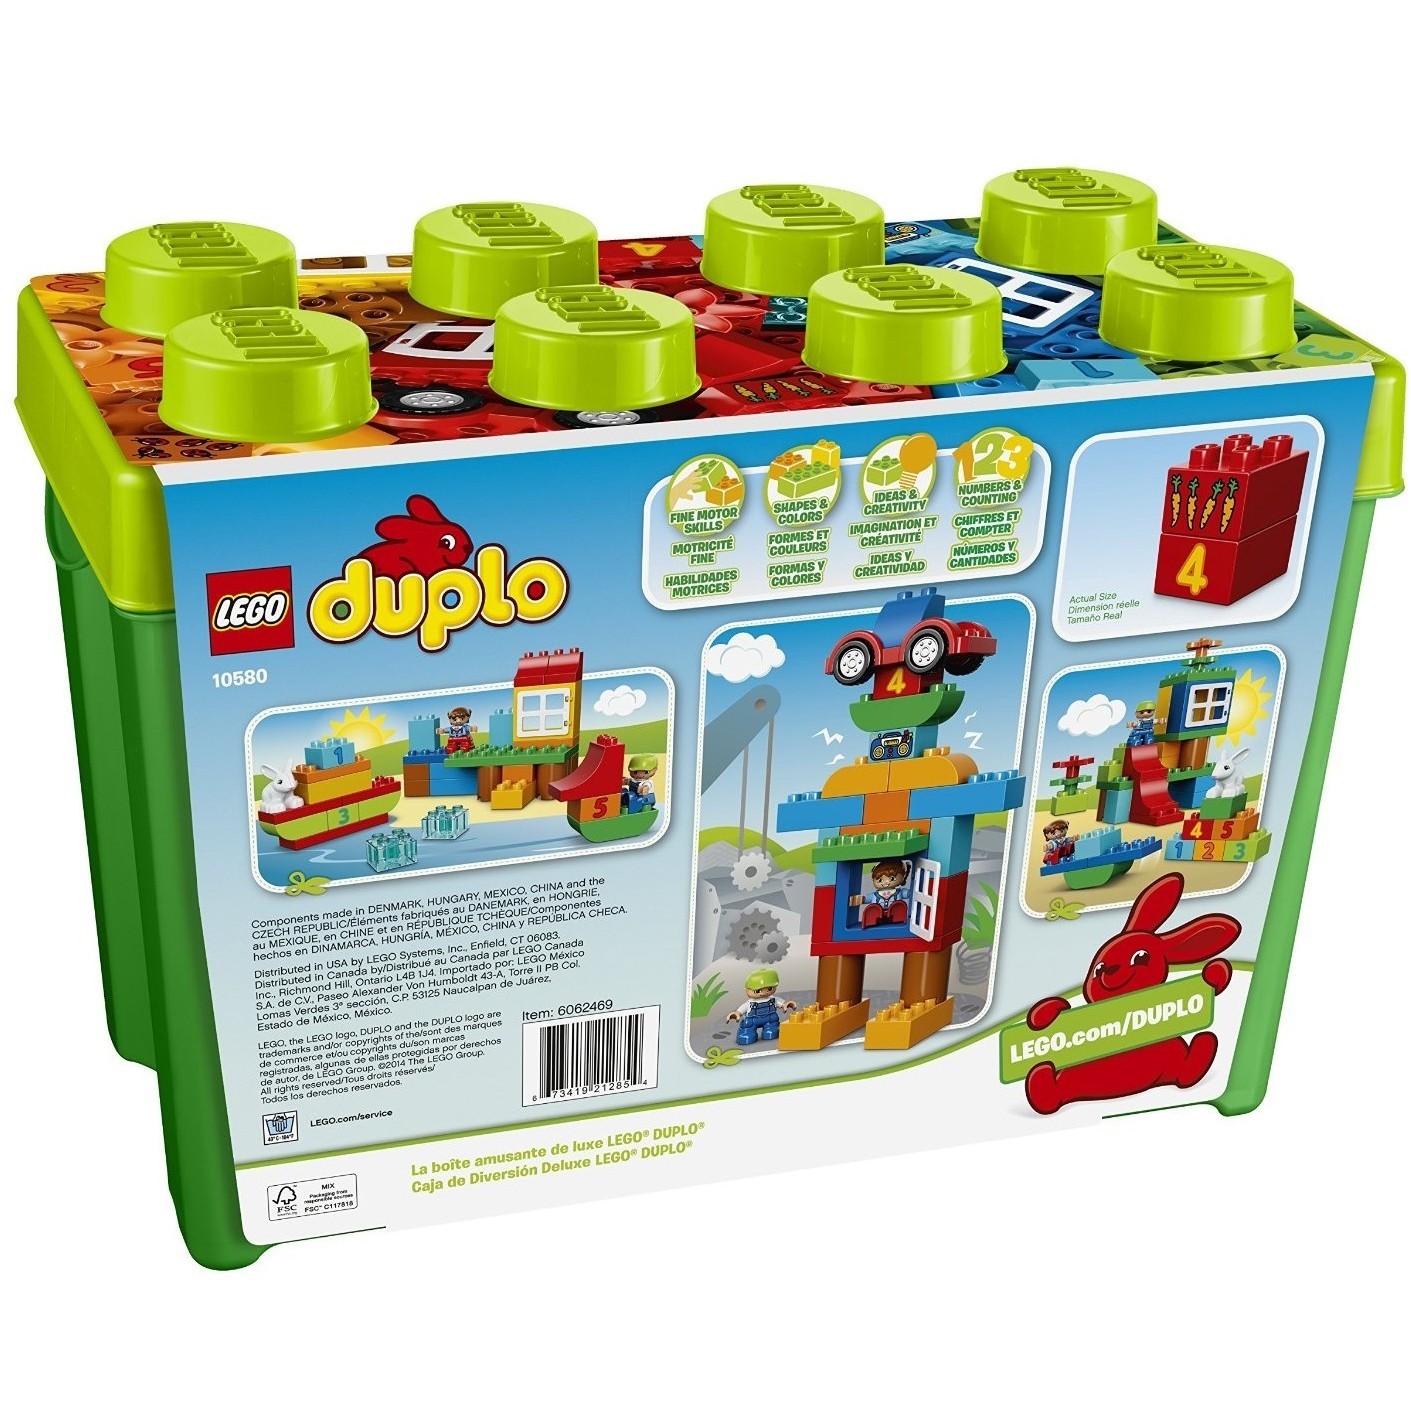 Конструктор Lego Deluxe Box of Fun 10580